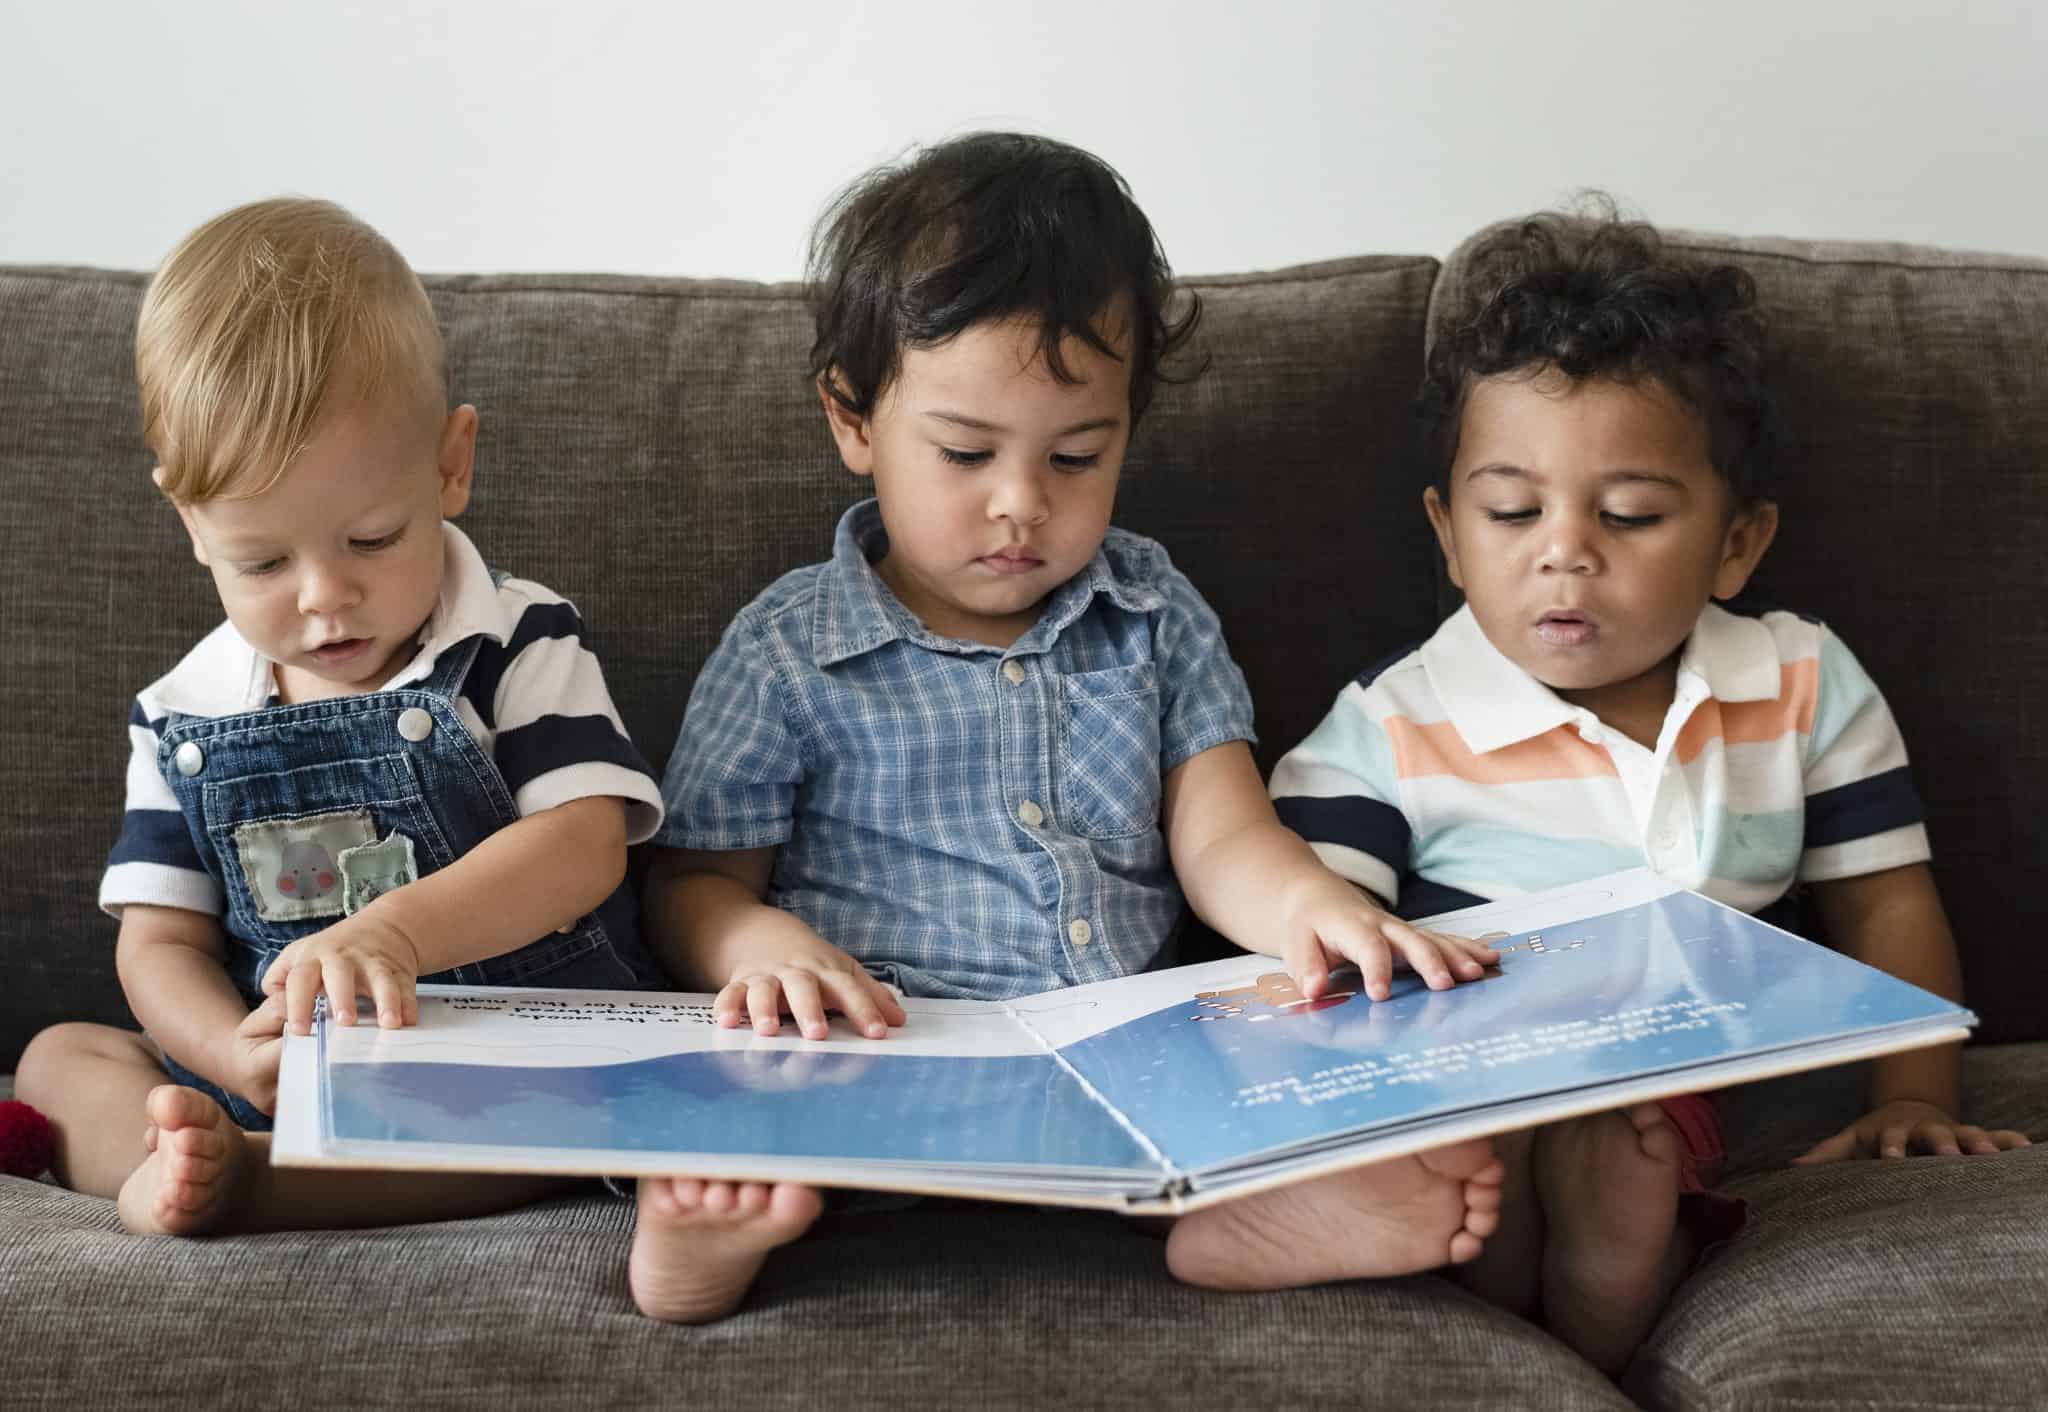 שלושה ילדים בנים קוראים בספר